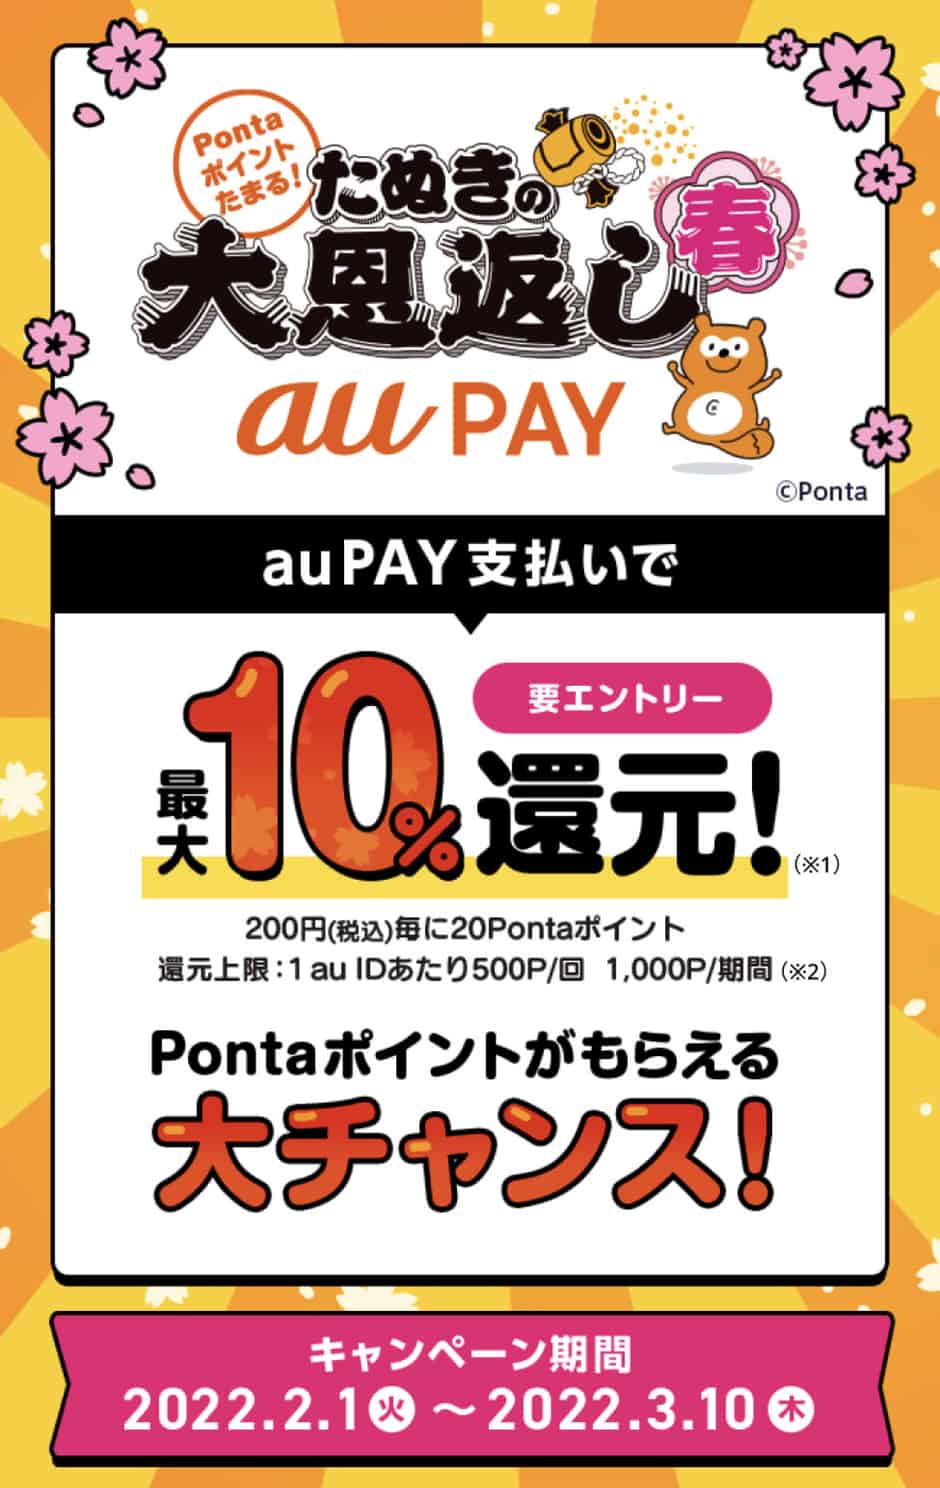 【auPAY決済限定】menu(メニュー)「10%ポイント還元(最大1000ポイント)」キャンペーン